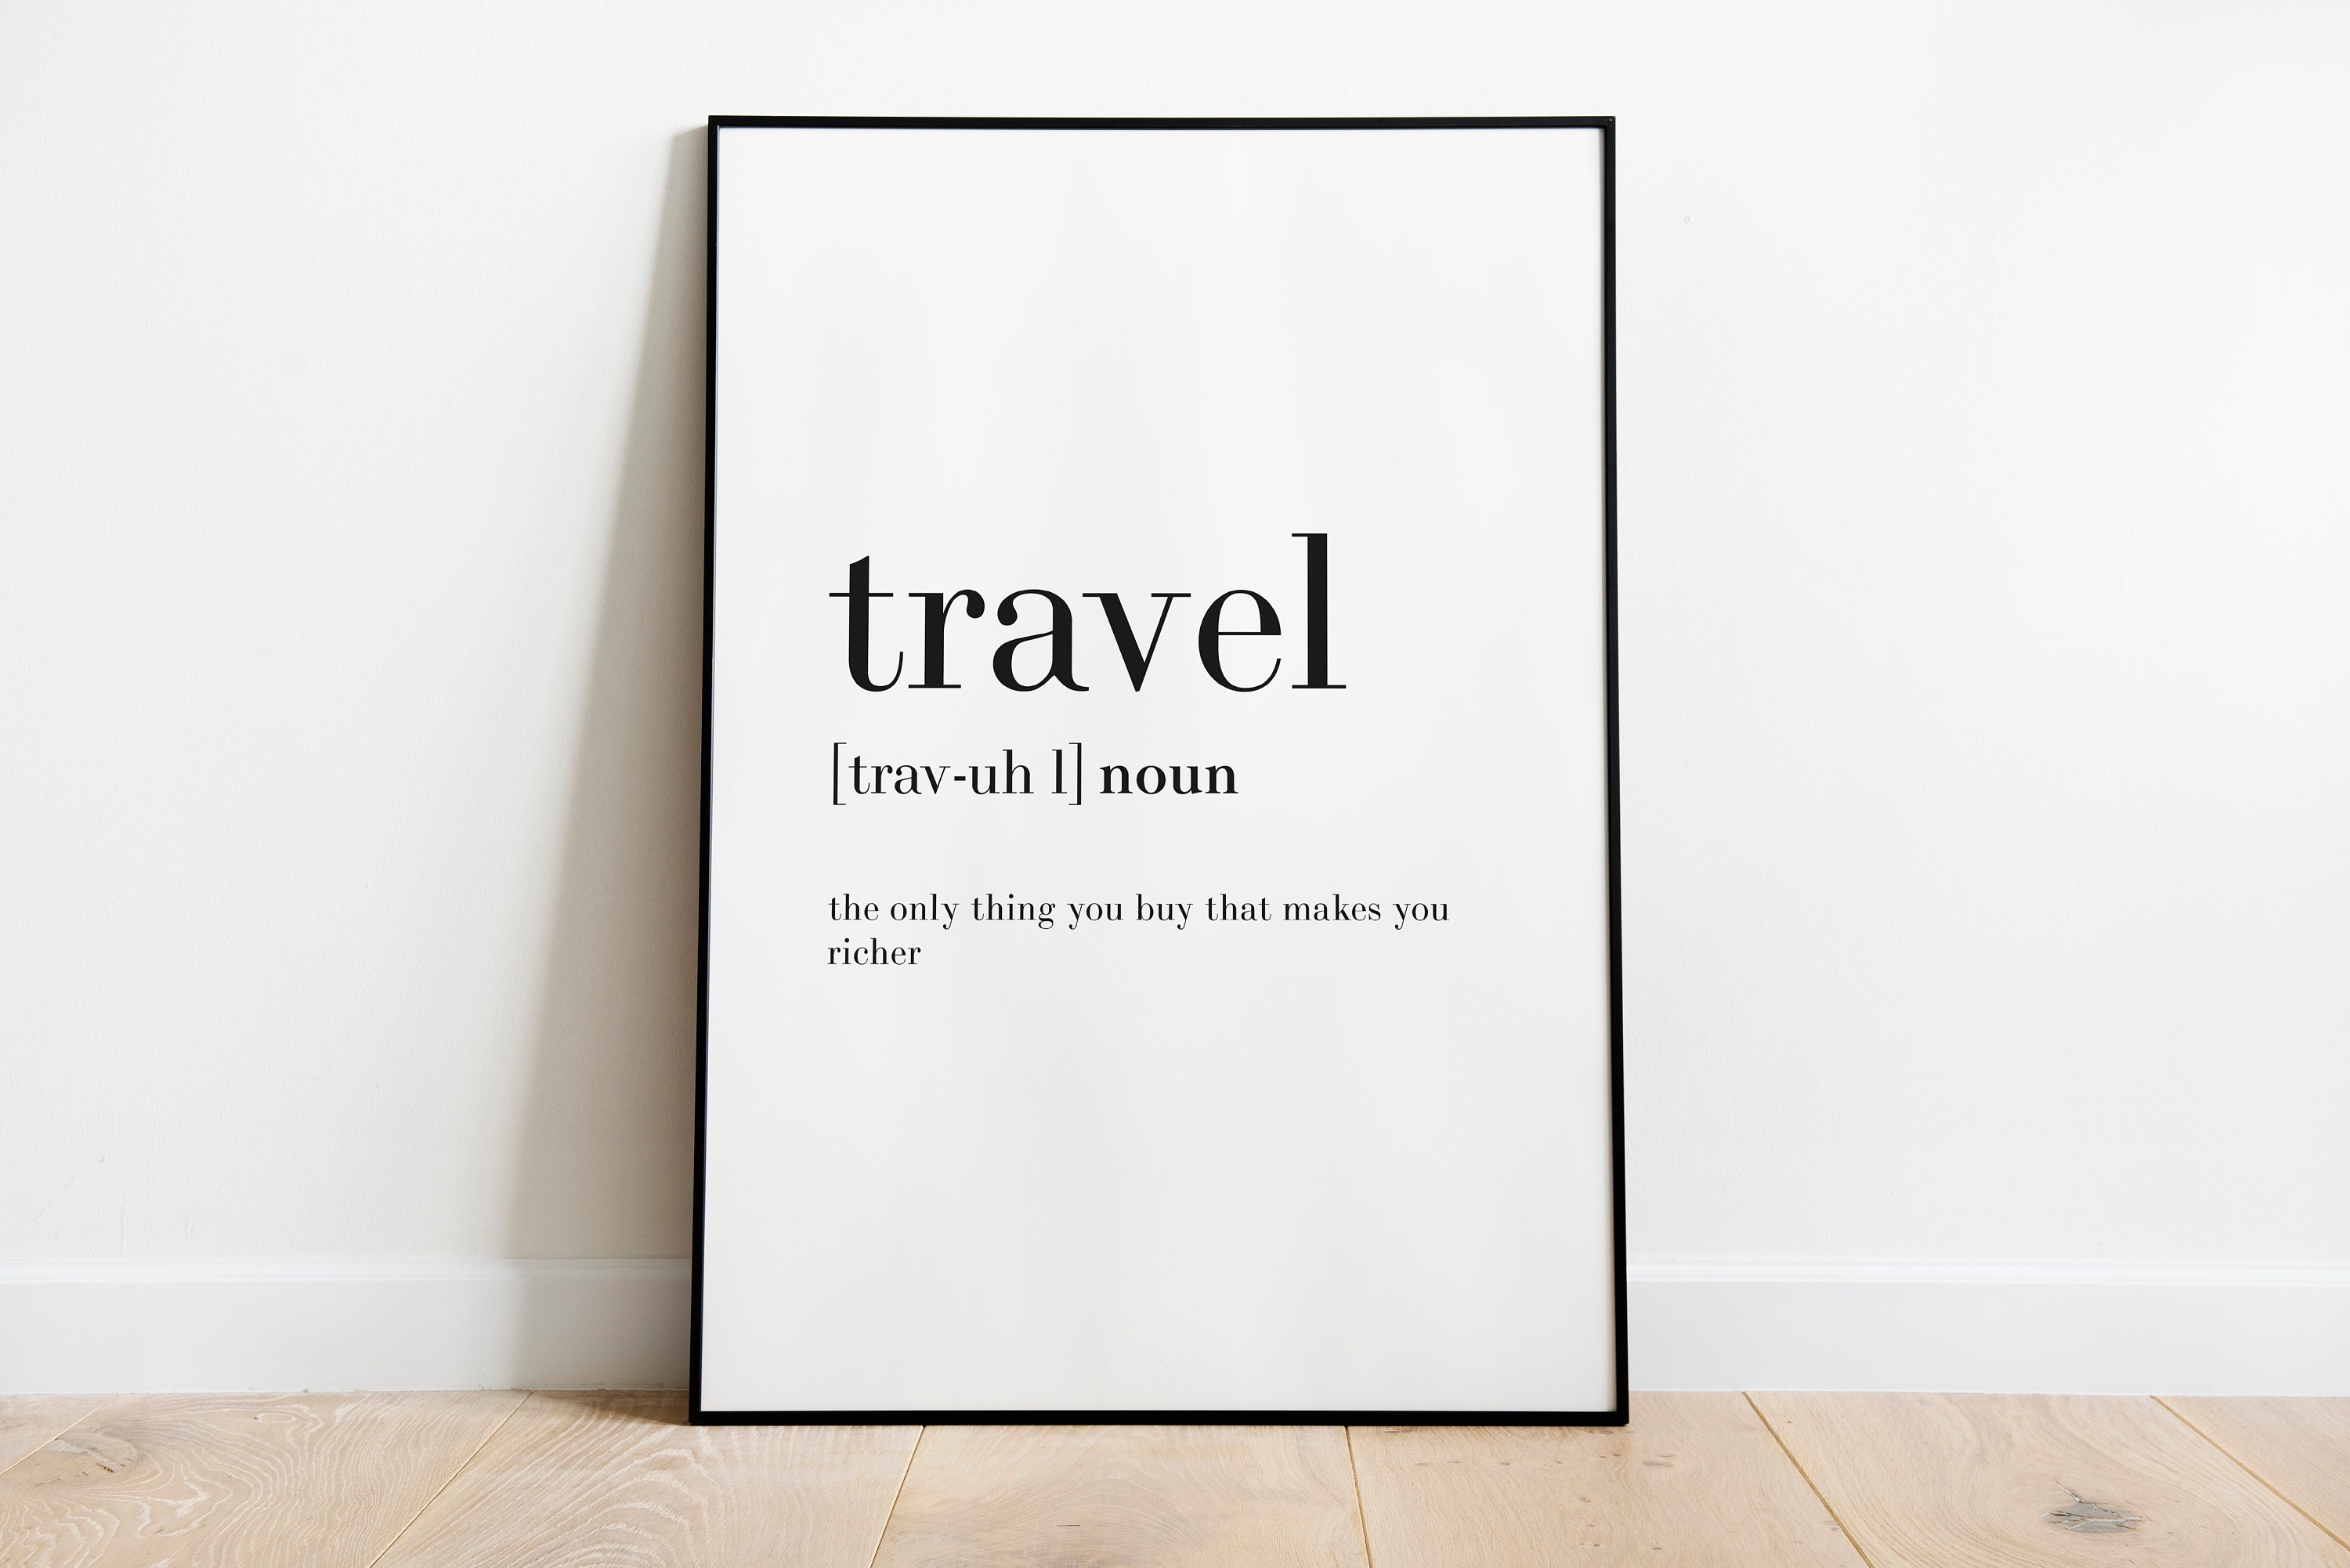 travel noun usage